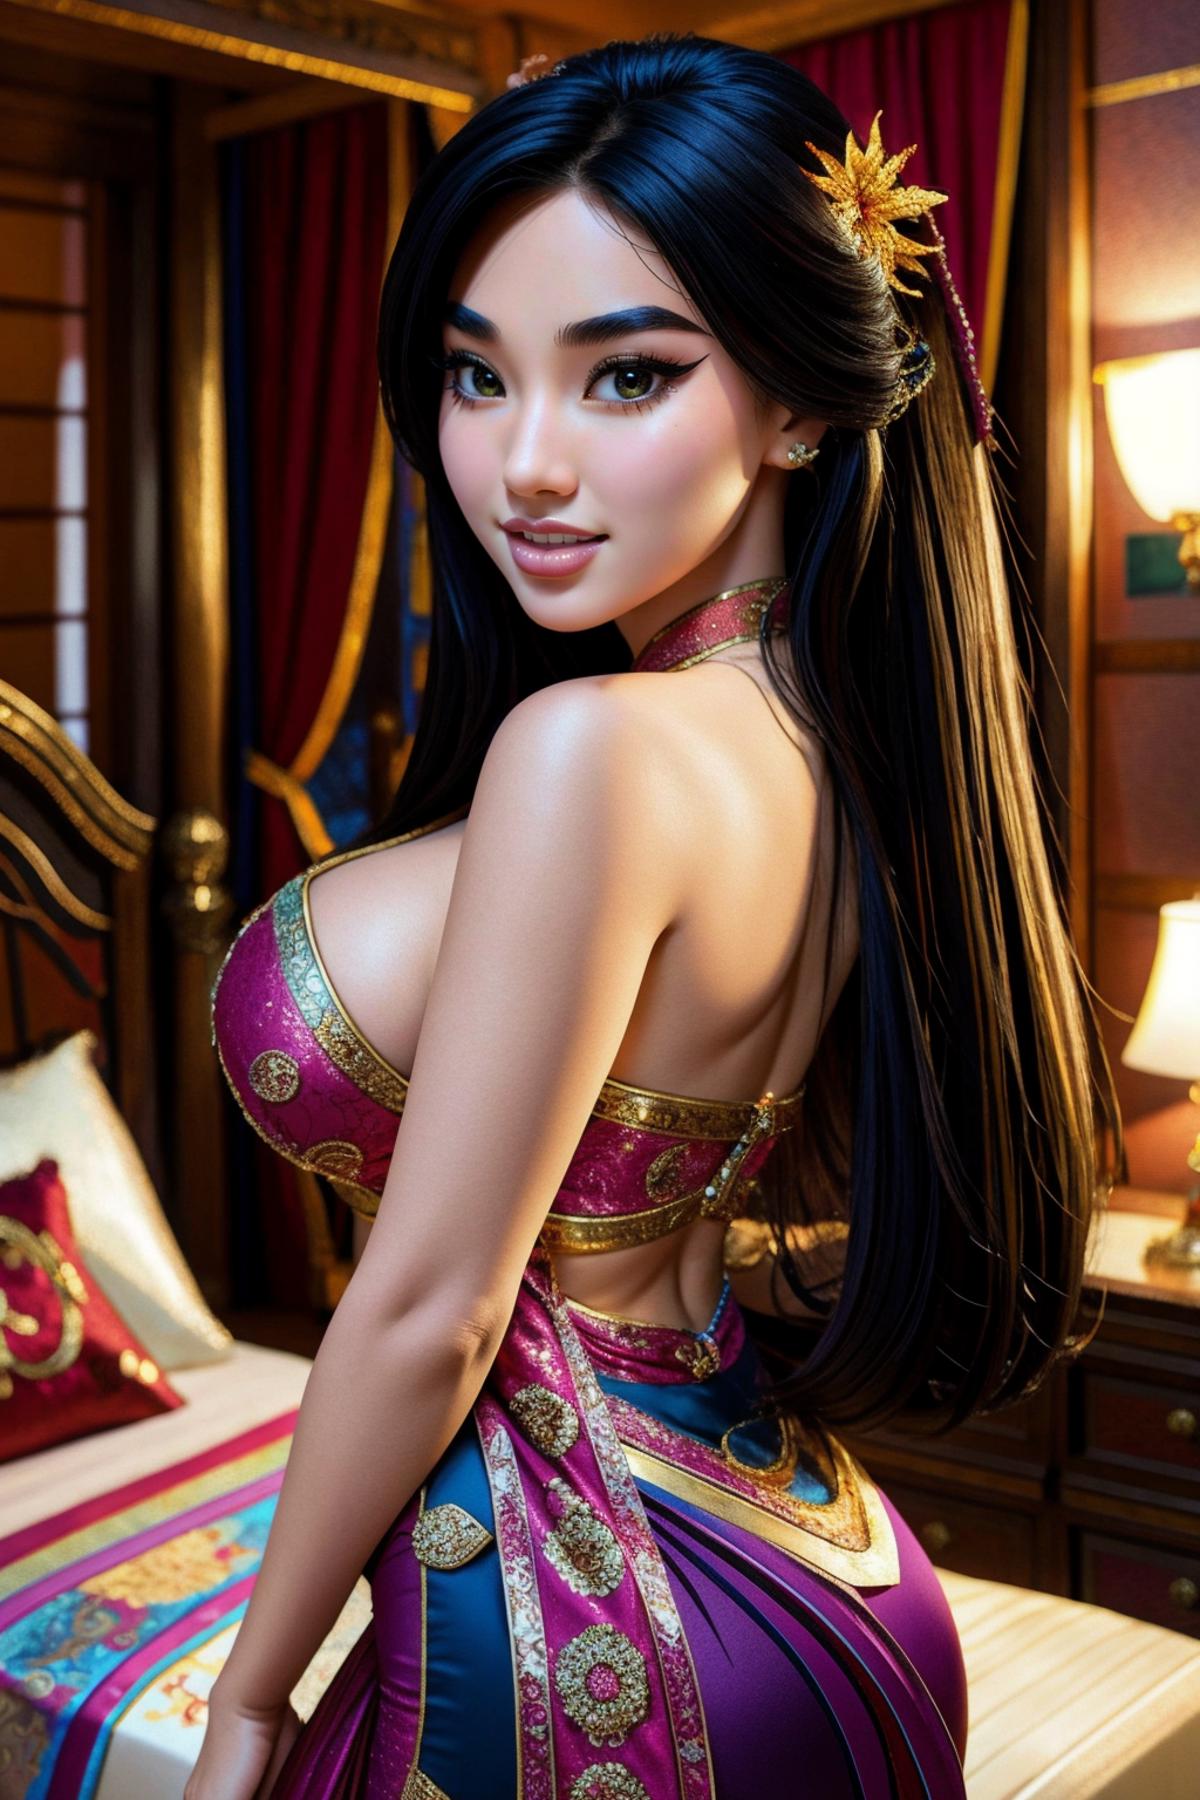 Mulan-Disney image by YoMonsieur